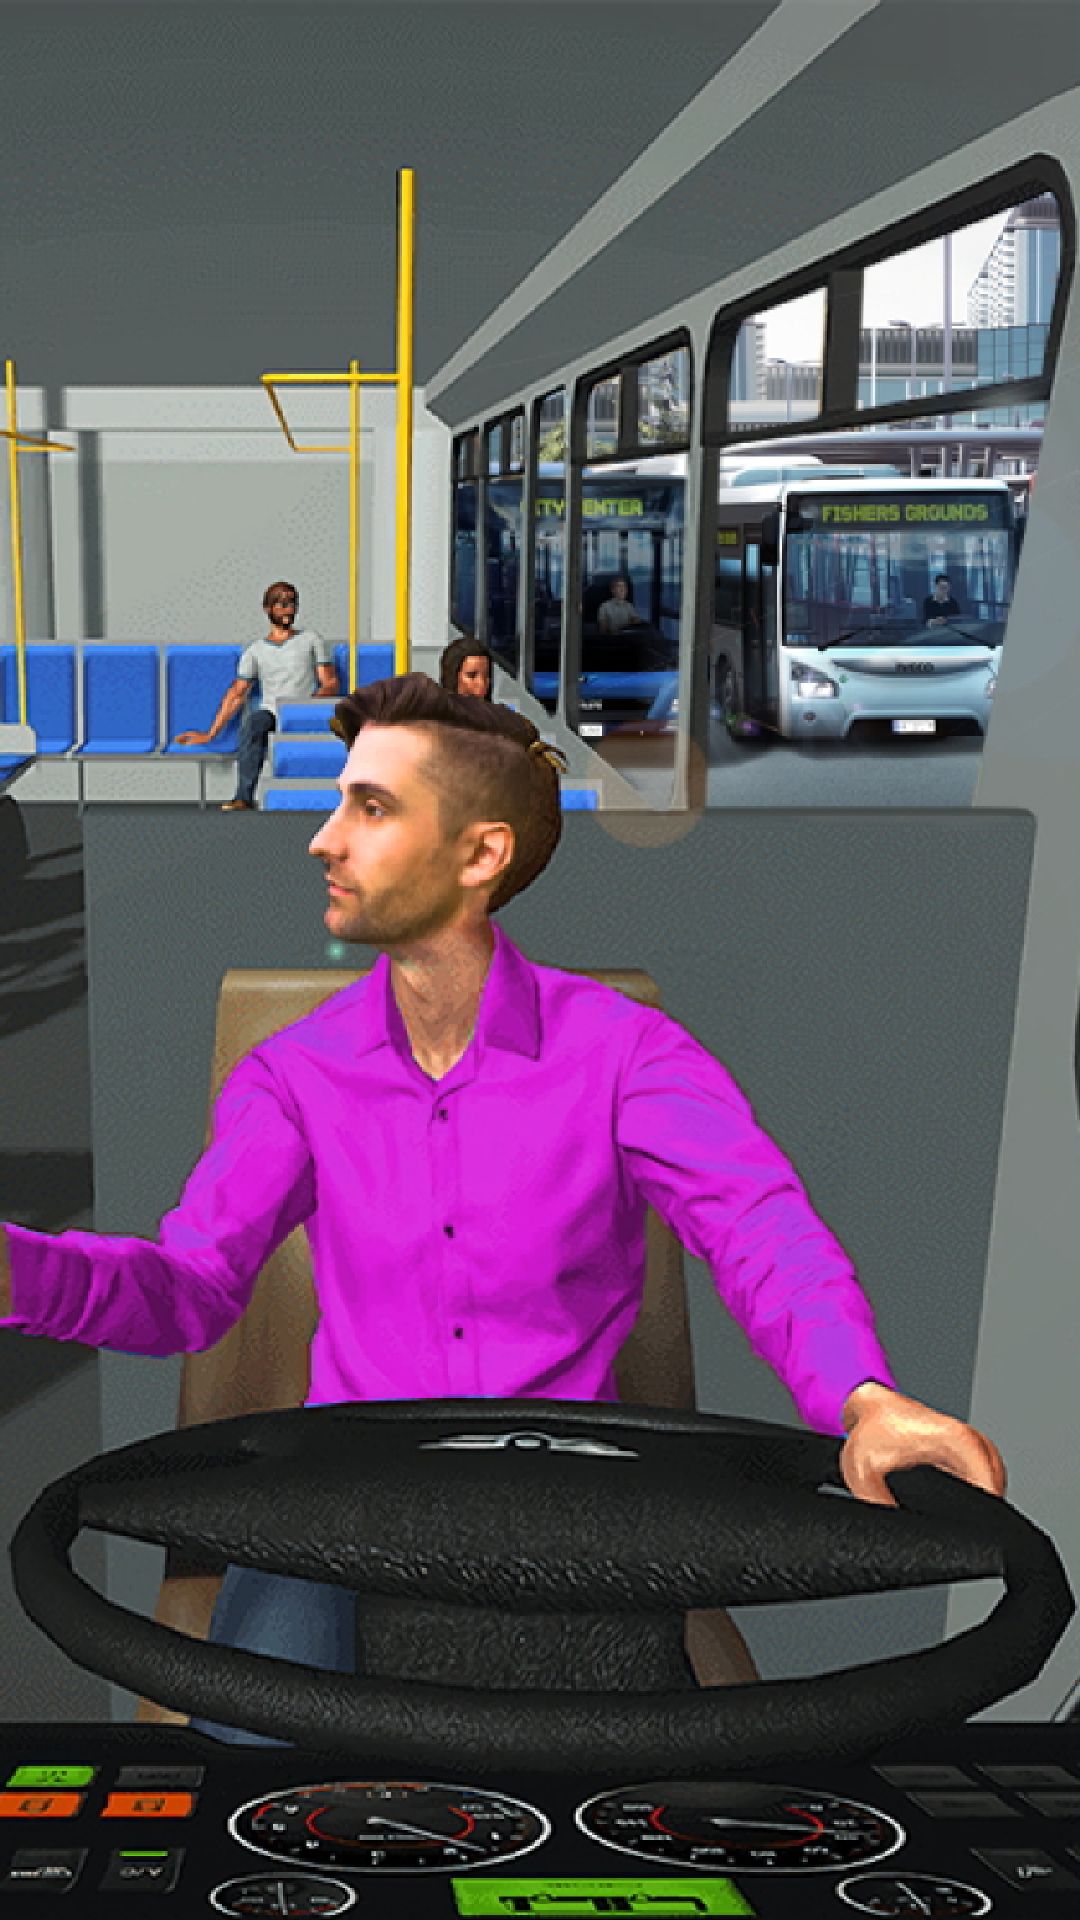 公交车模拟器2021破解版